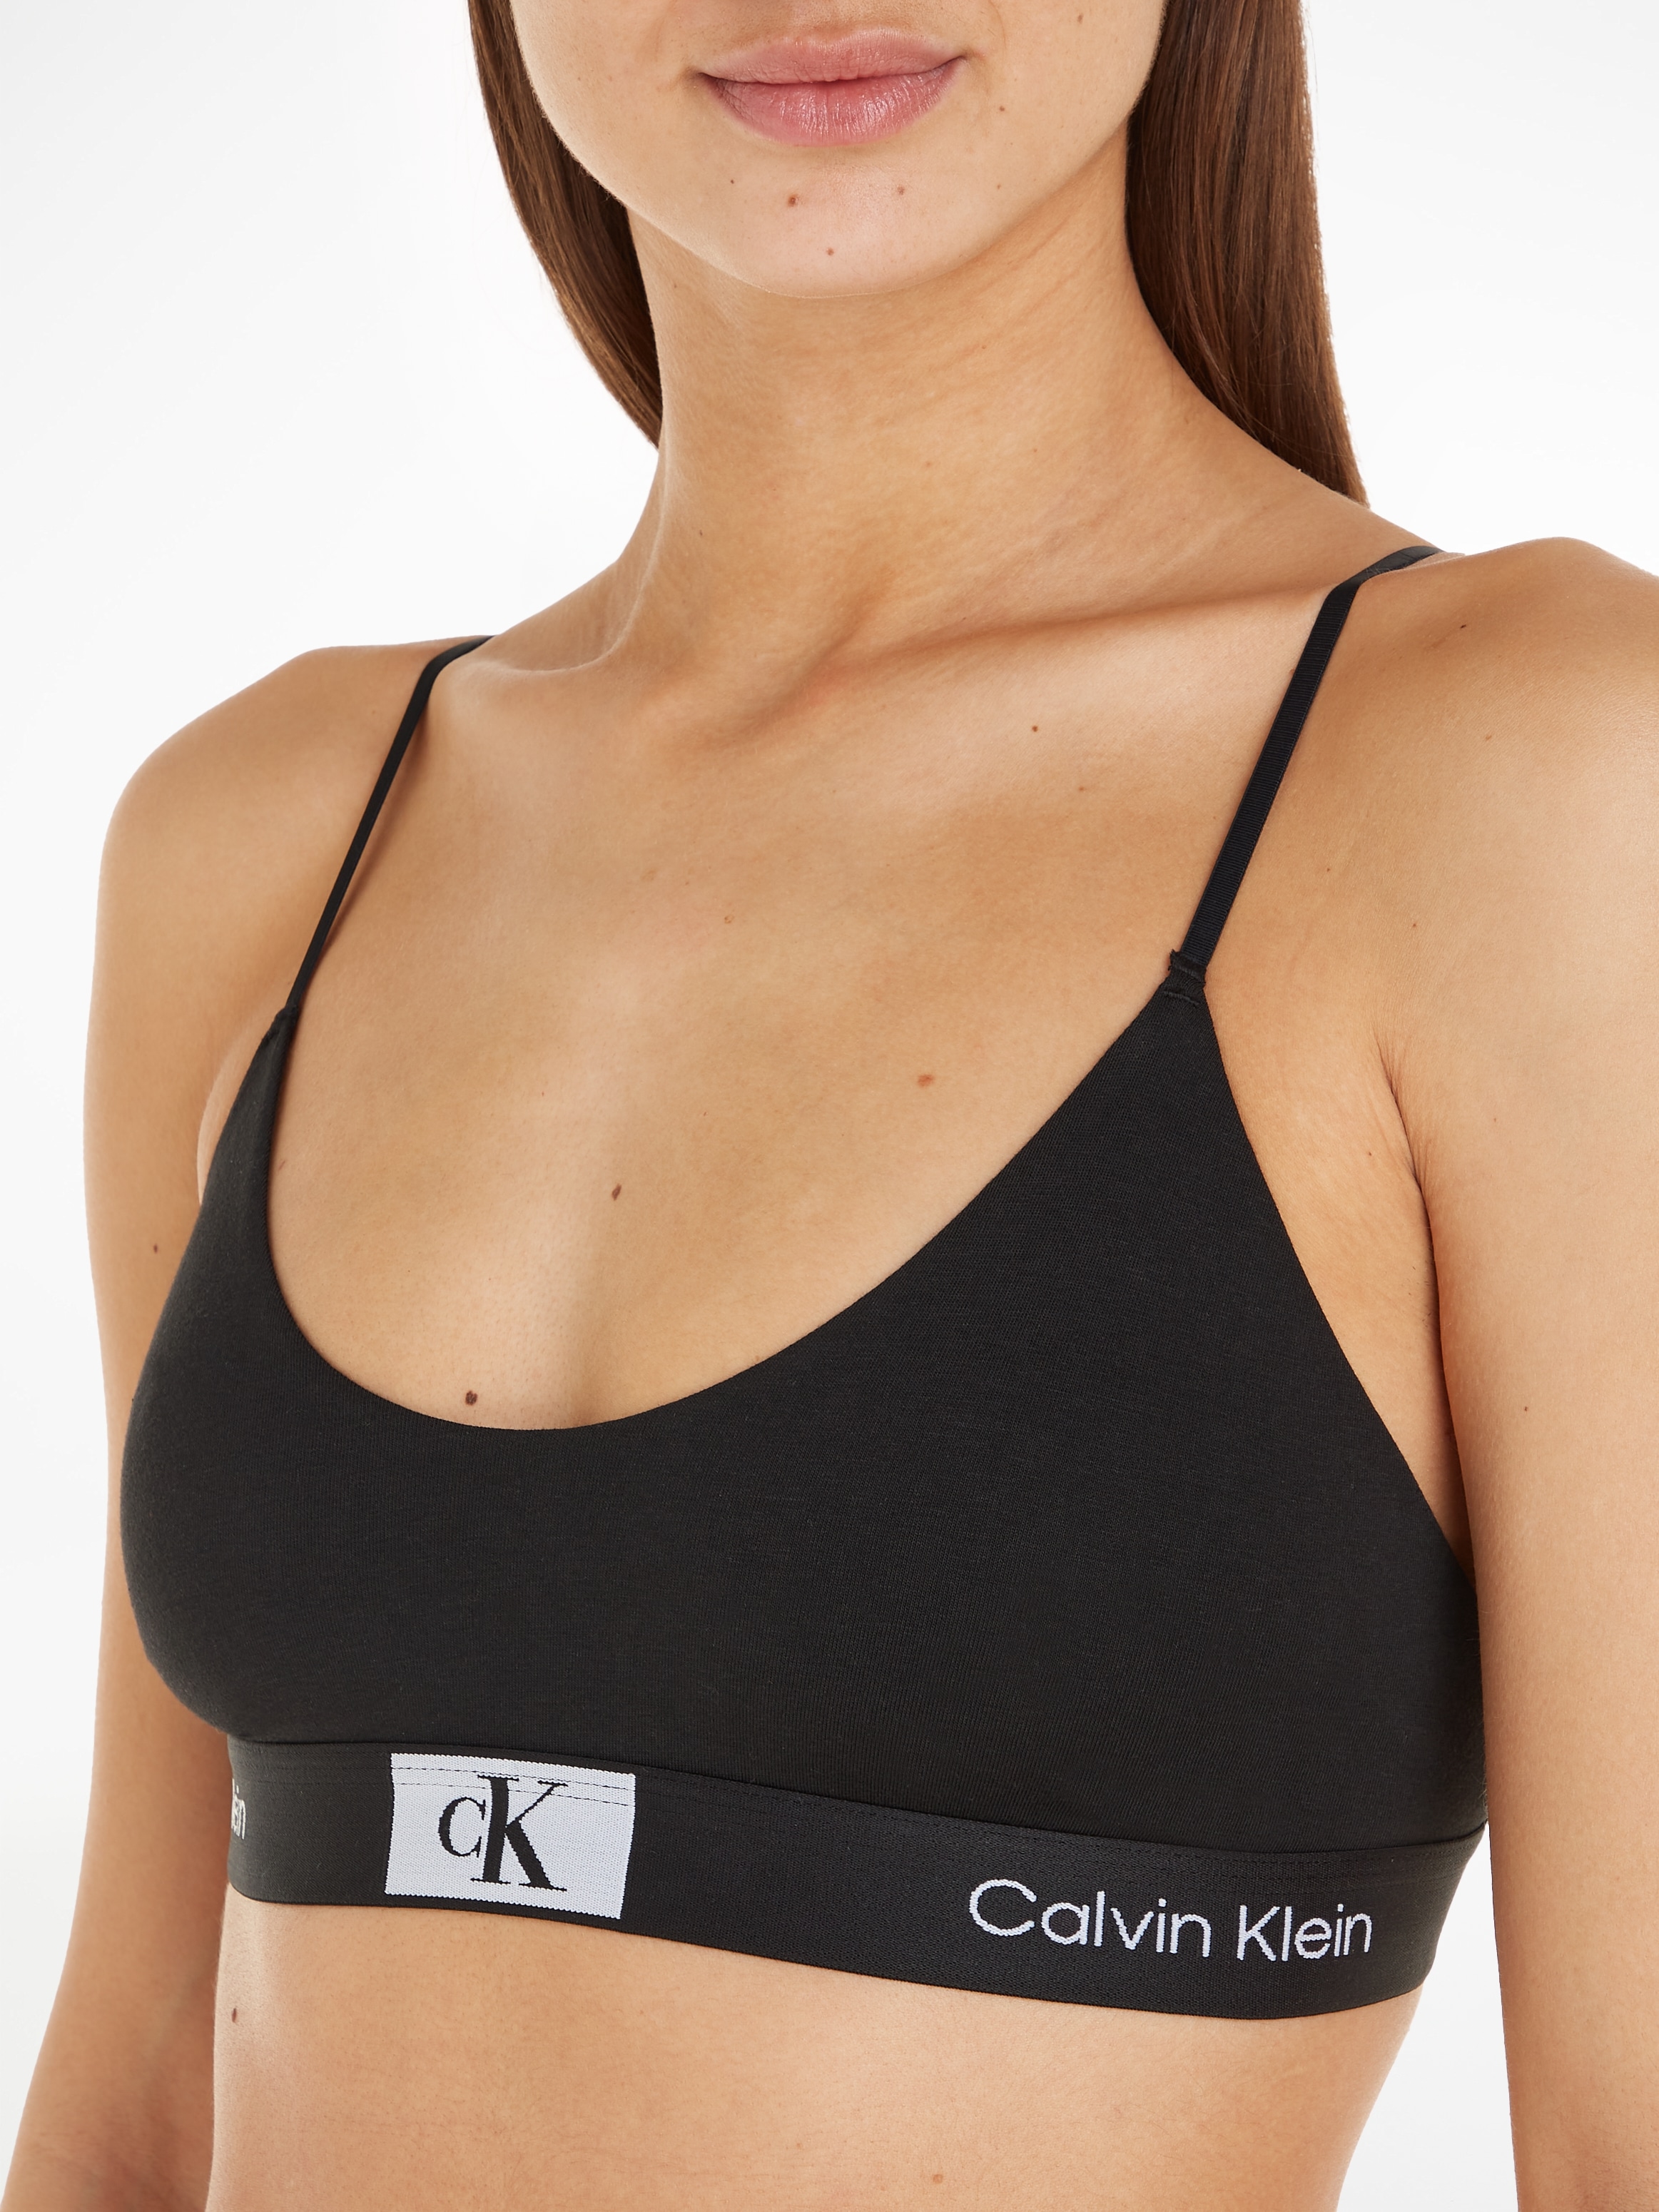 Calvin Klein Underwear Bralette »UNLINED BRALETTE«, mit klassischem CK-Logobund